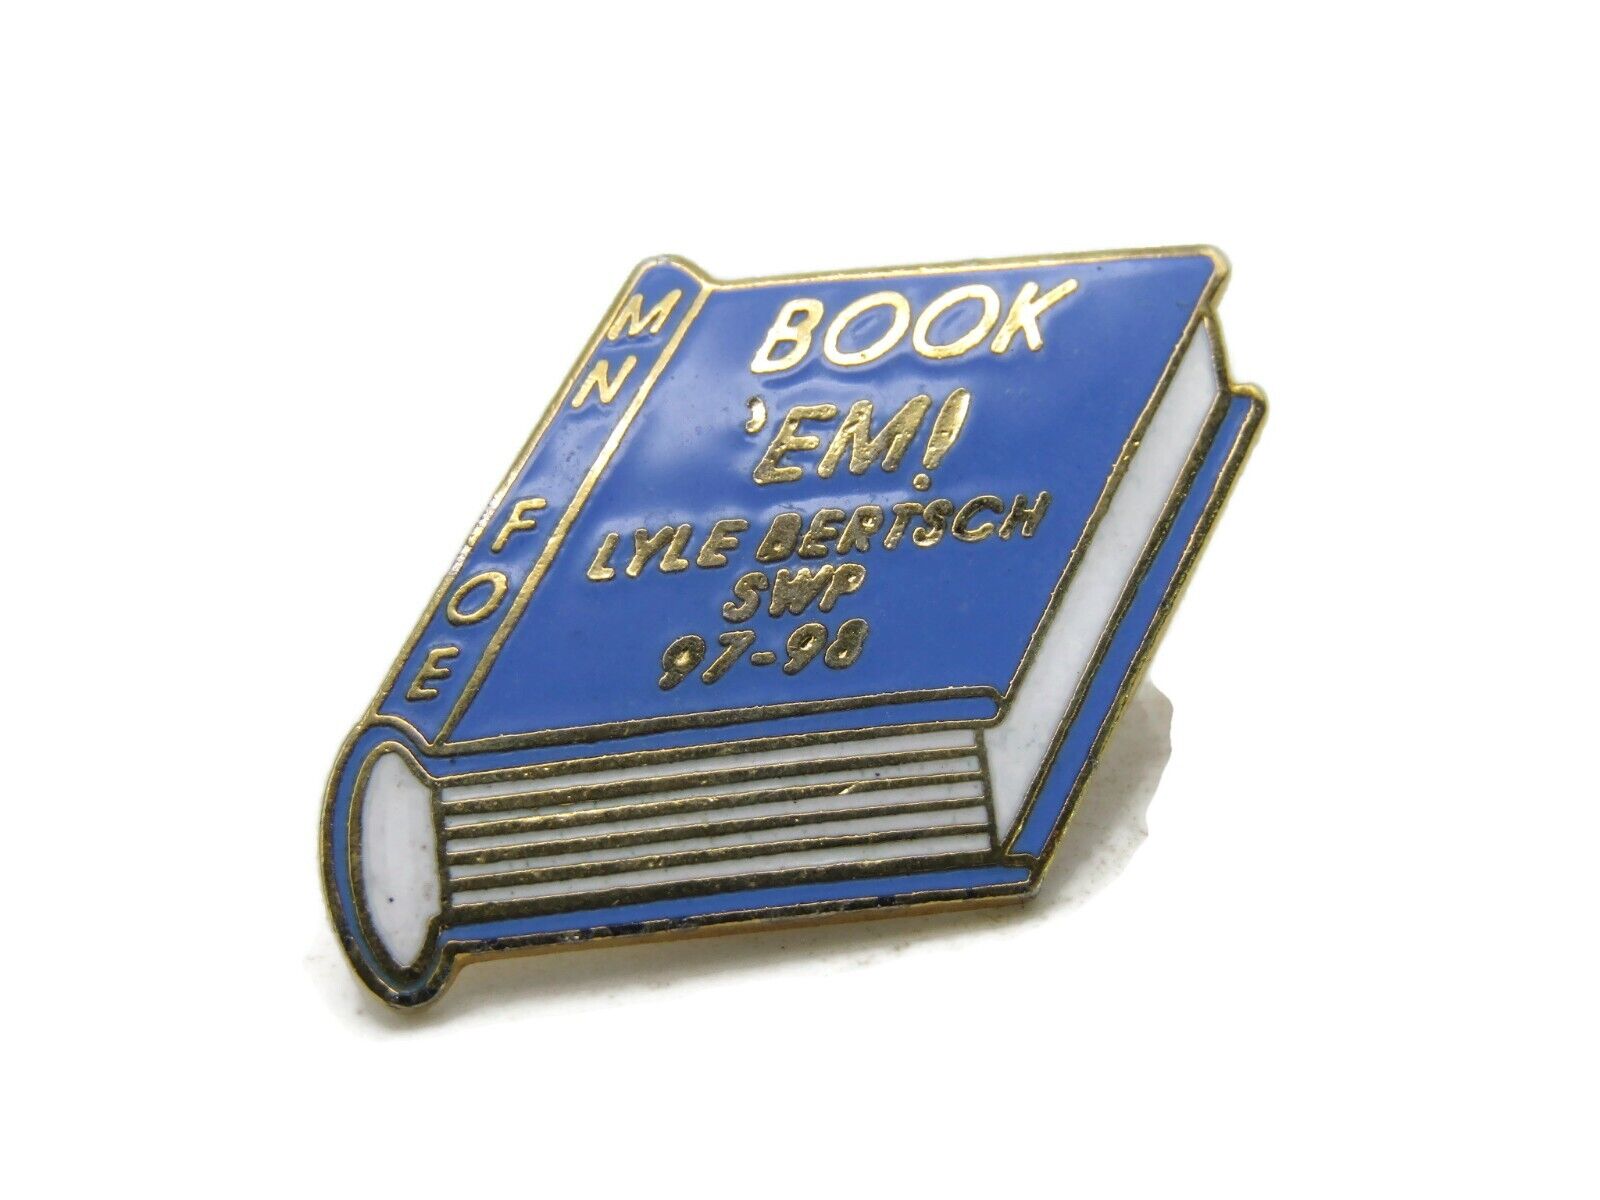 MN FOE Pin Book 'Em! Lyle Bertsch SWP 97-98 Gold Tone